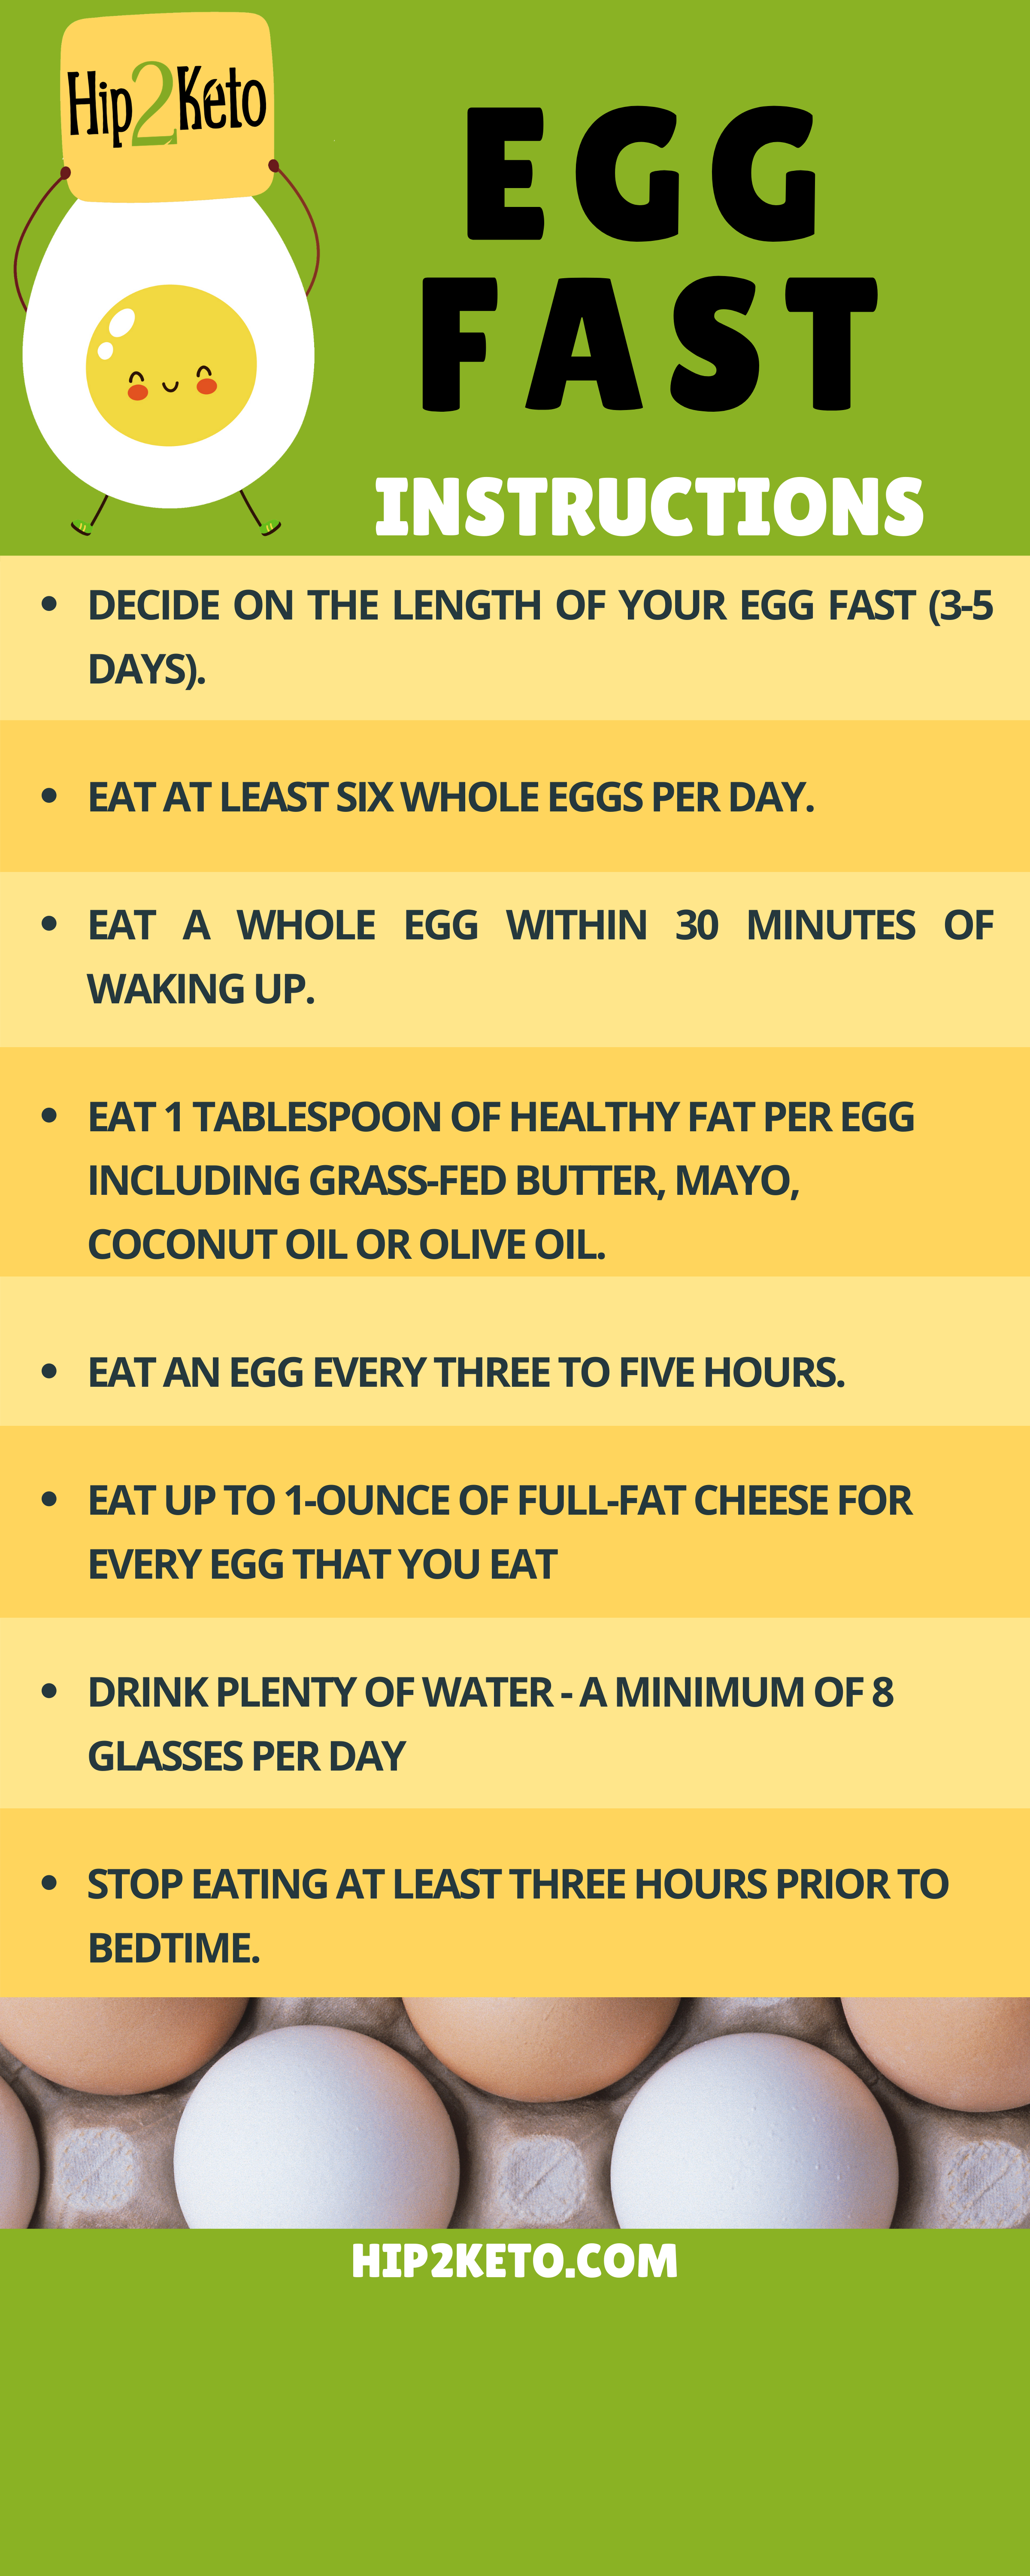 does ketogenic egg diet work